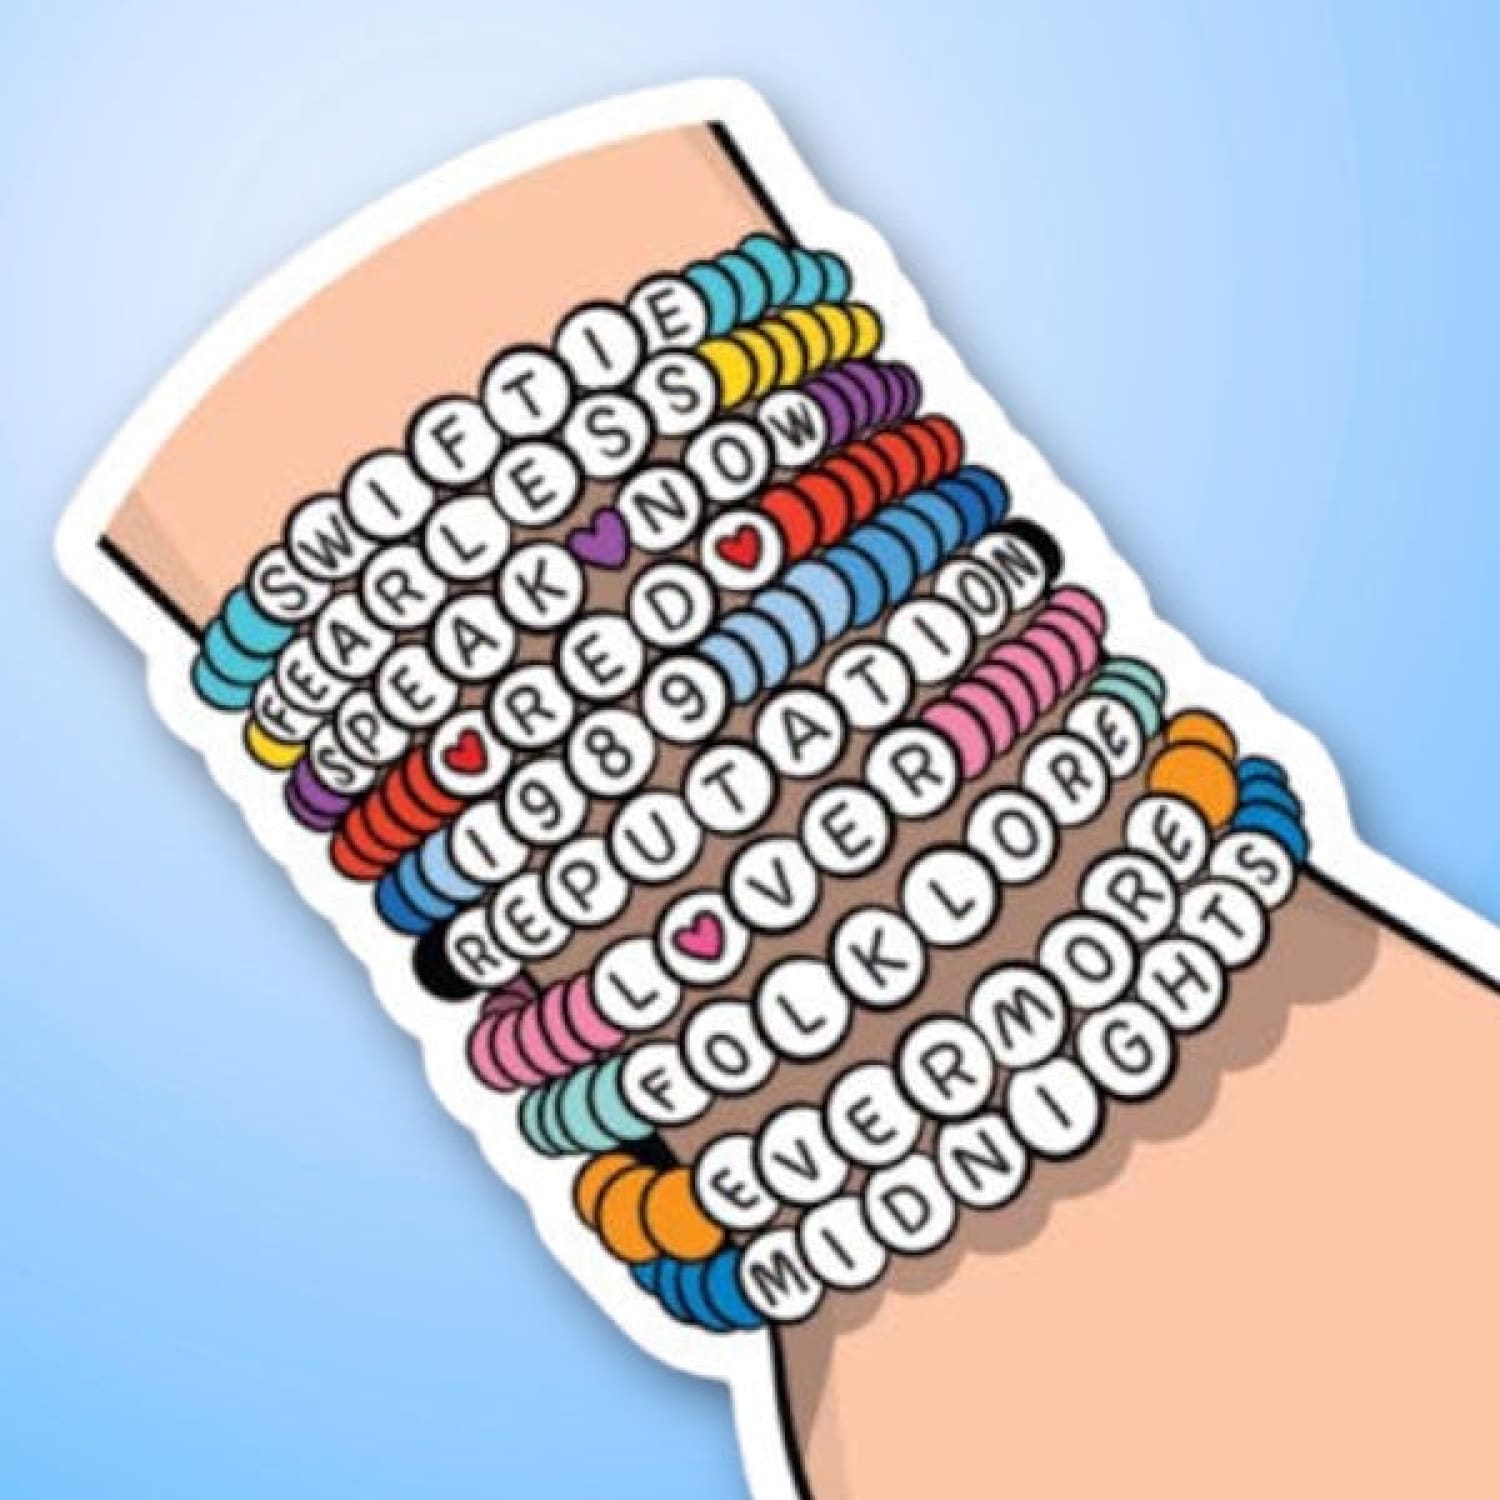 Taylor Friendship Bracelets Sticker Decorative Sticker -